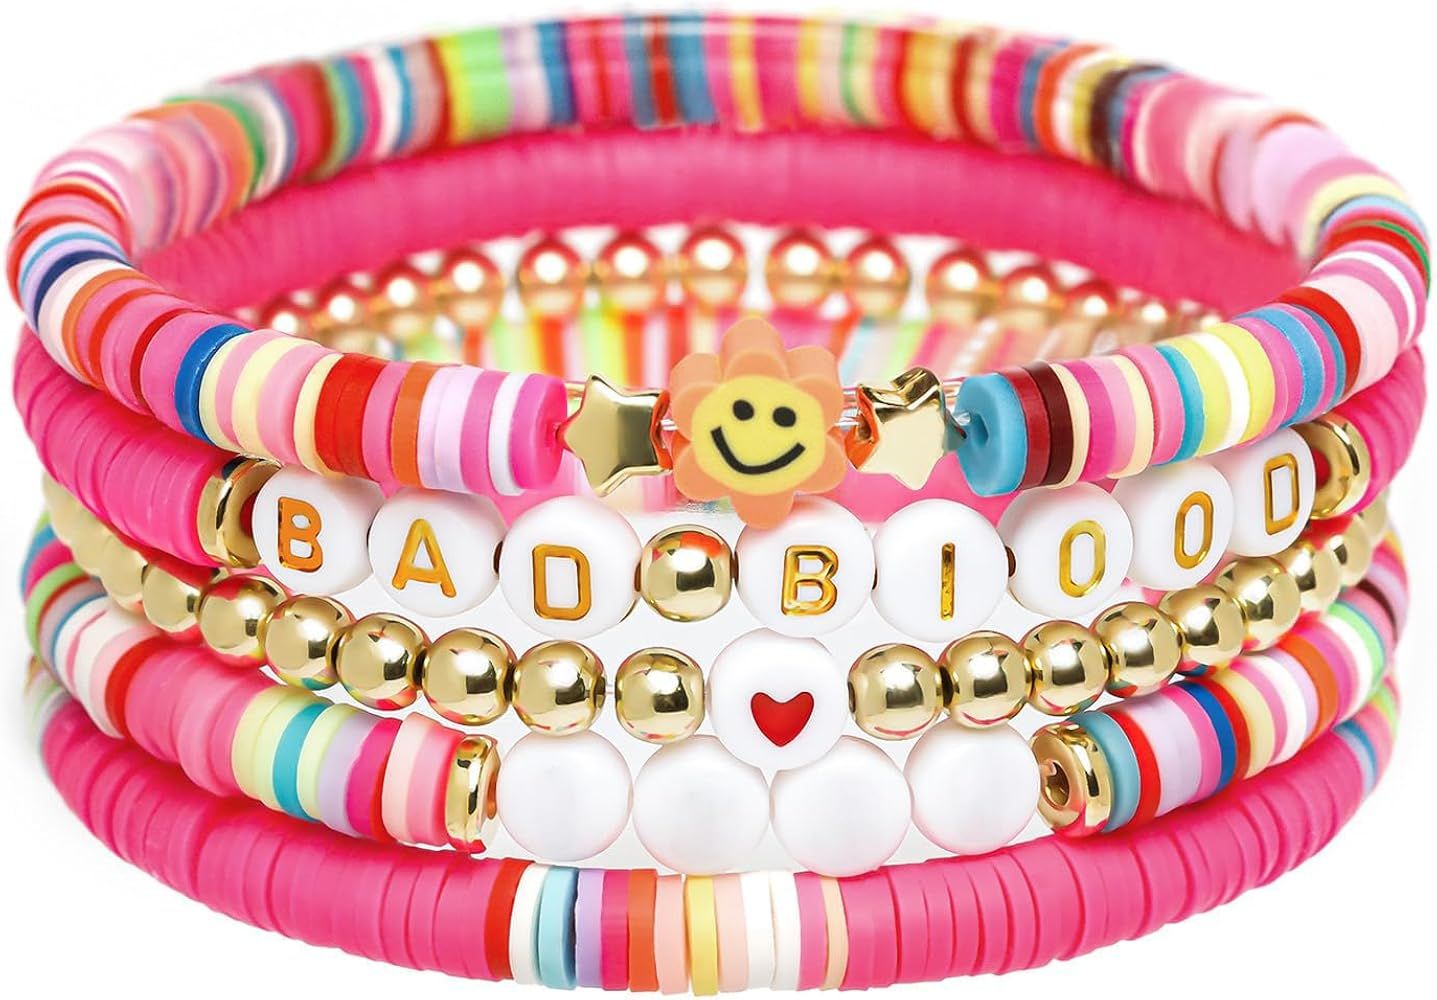 5 Pack Girl Bracelets - Gifts For Girls Boys Women Music Fans | Amazon (US)